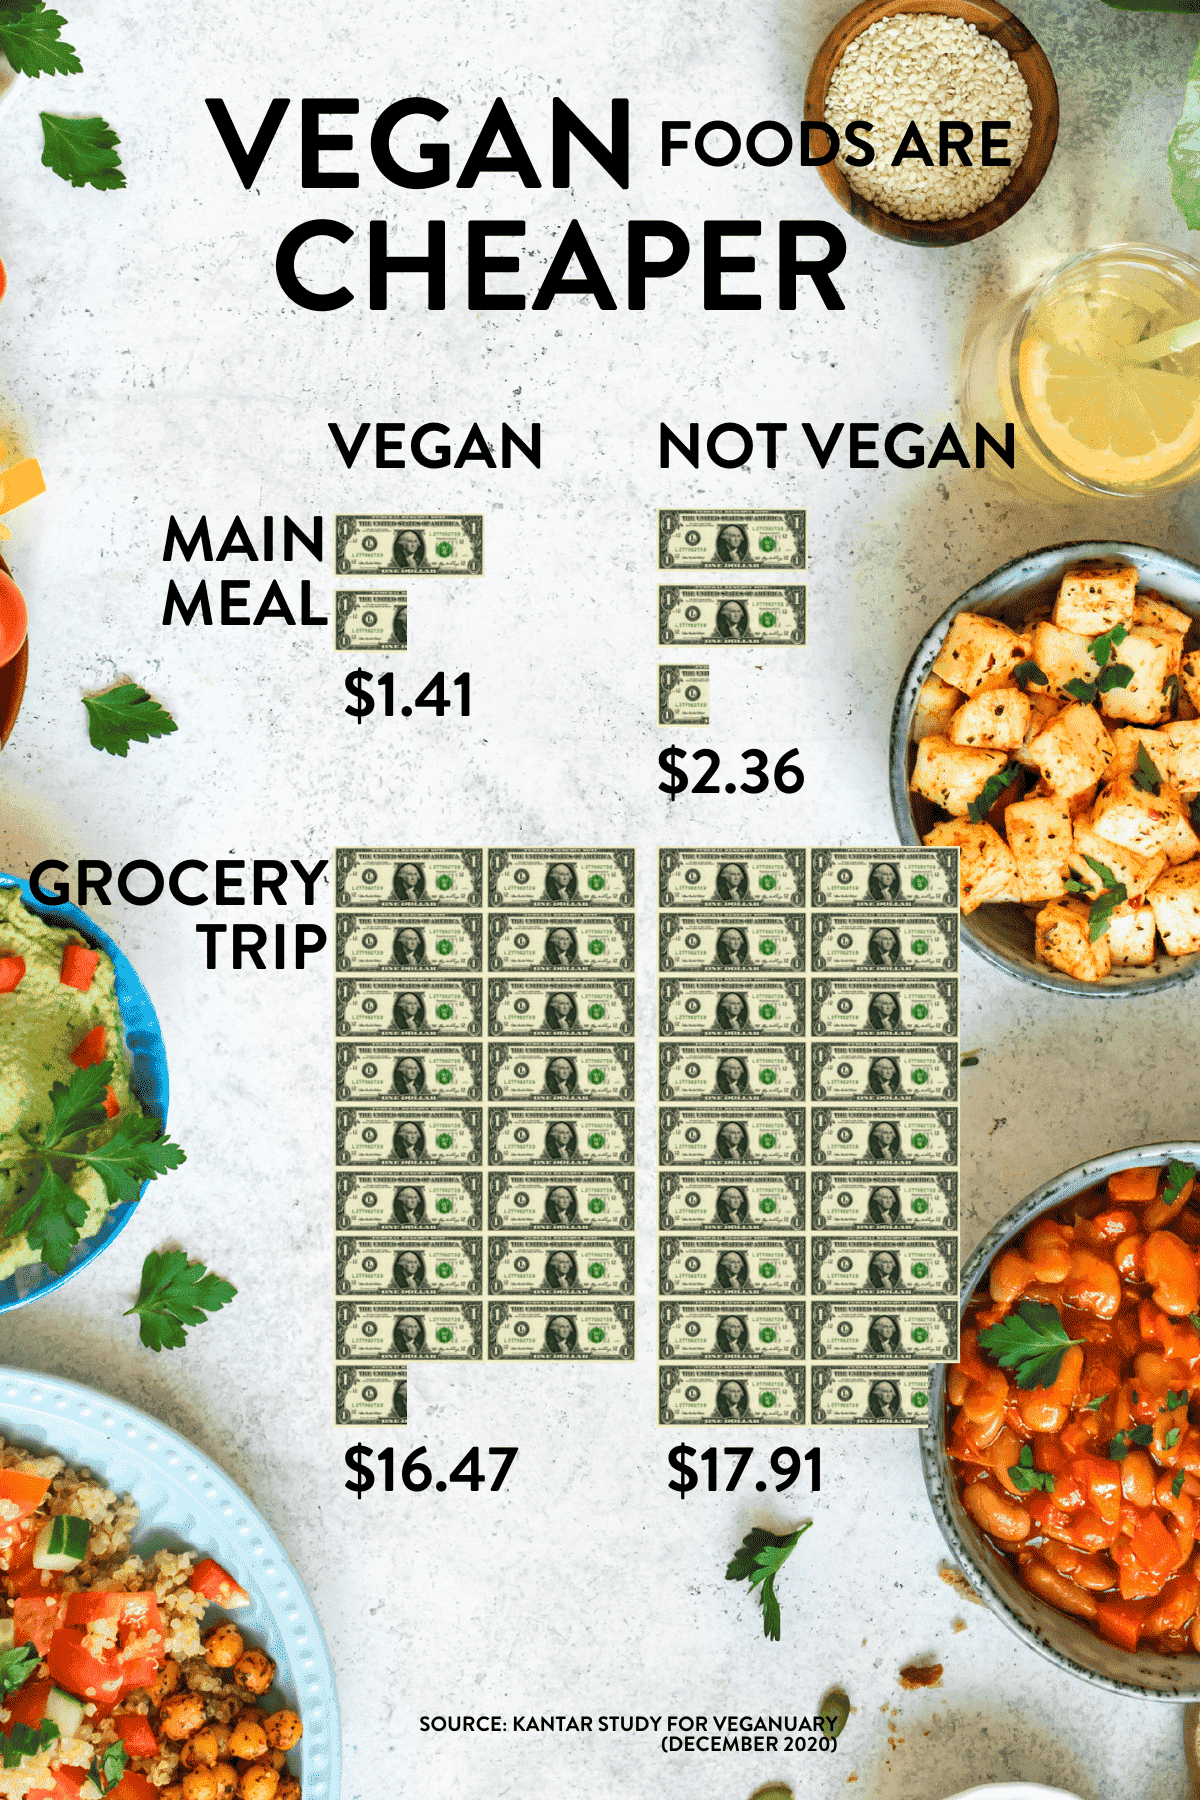 Is vegan food cheaper?